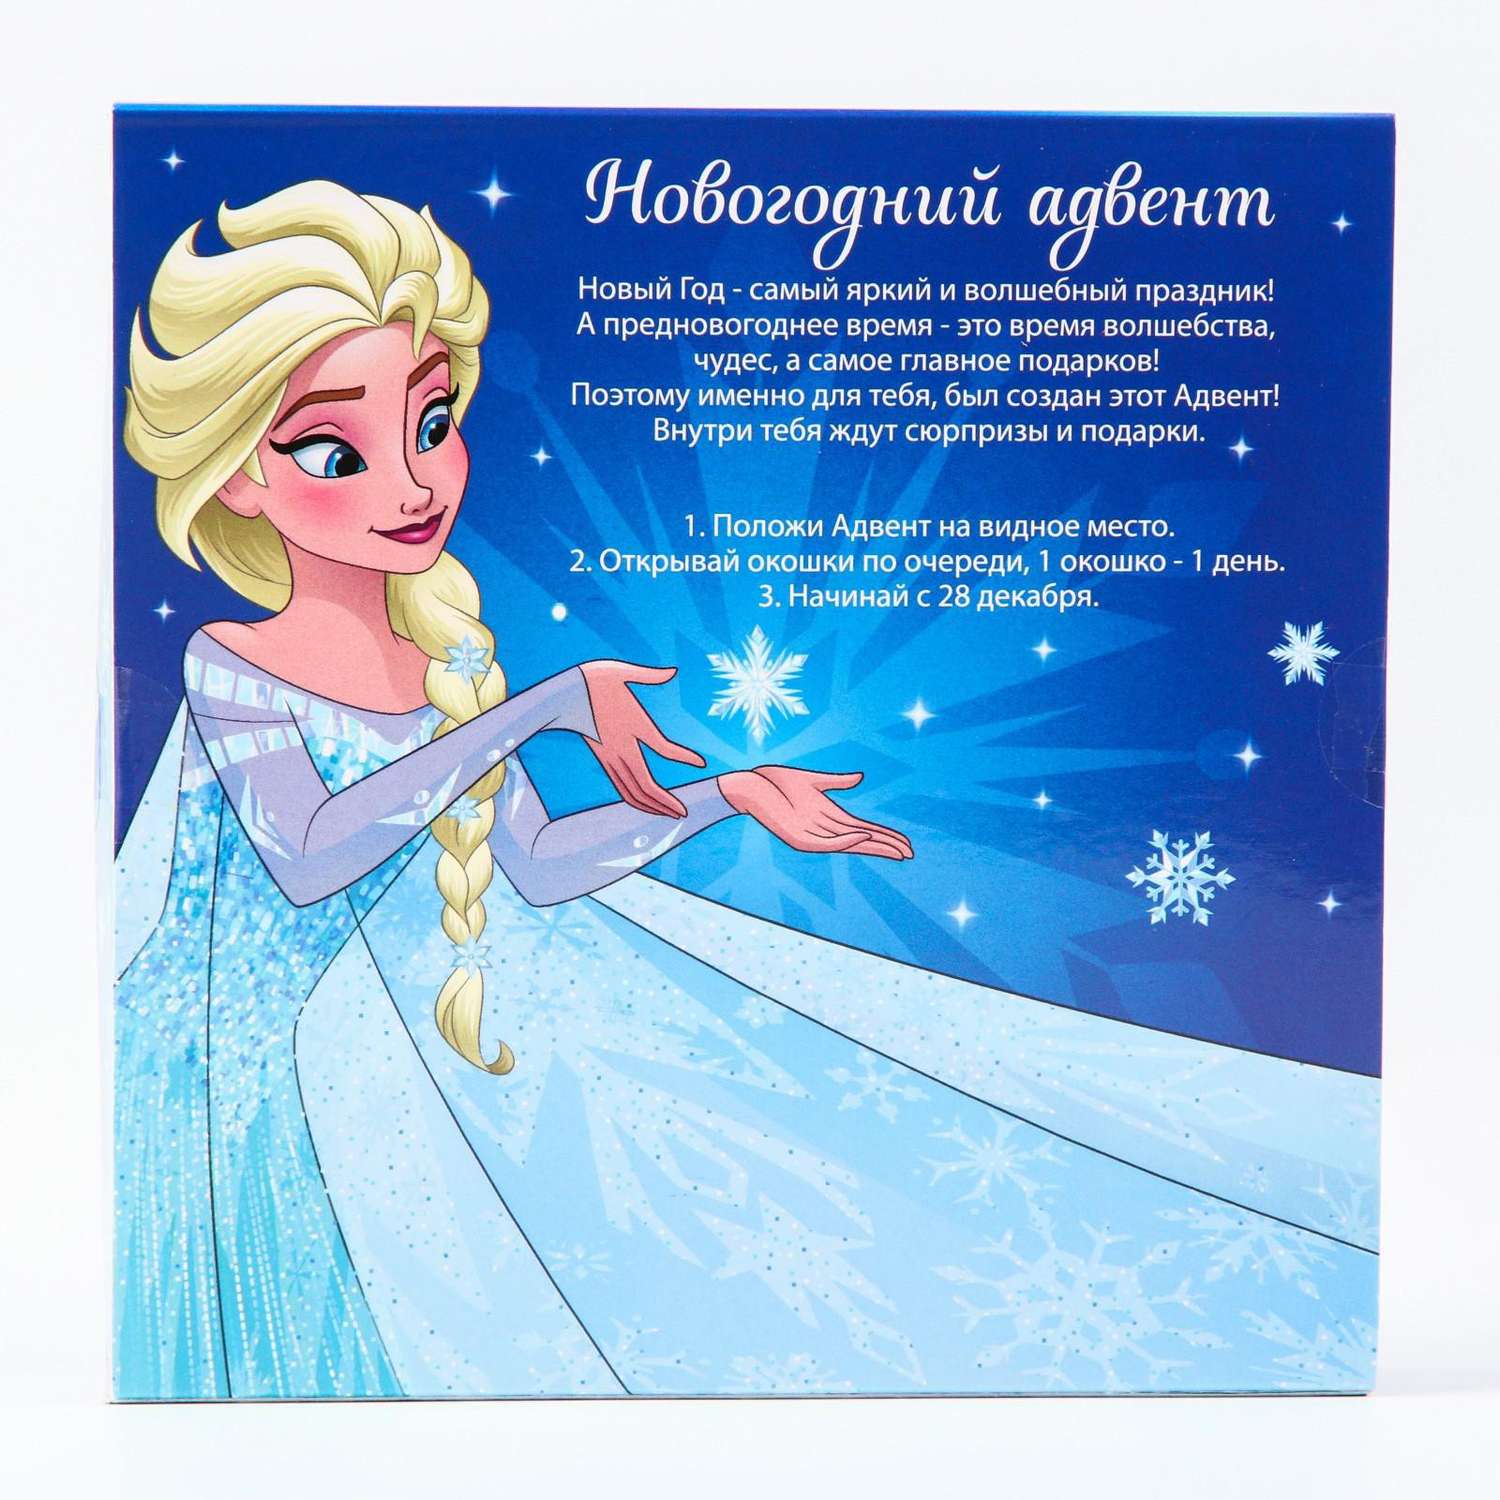 Подарочная коробка Disney Адвент-календарь Набор опытов и сюрпризов Winx - фото 3